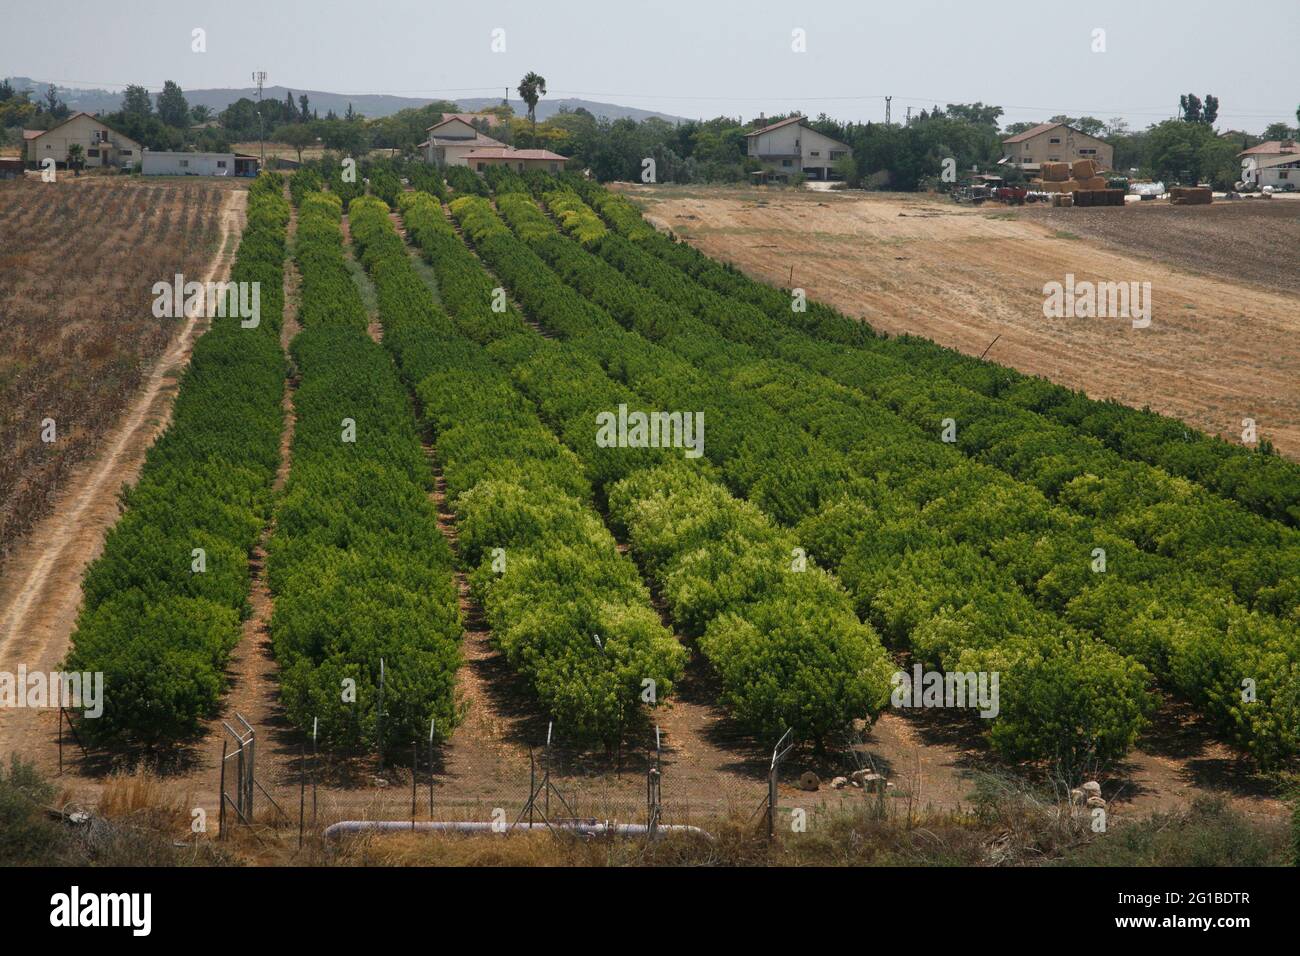 Obstgarten mit Nectarine-Bäumen, Lower Shephelah Hills, Lowlands oder Judäischen Ausläufern in der Nähe des Dorfes Kfar Shmuel, Israel Stockfoto